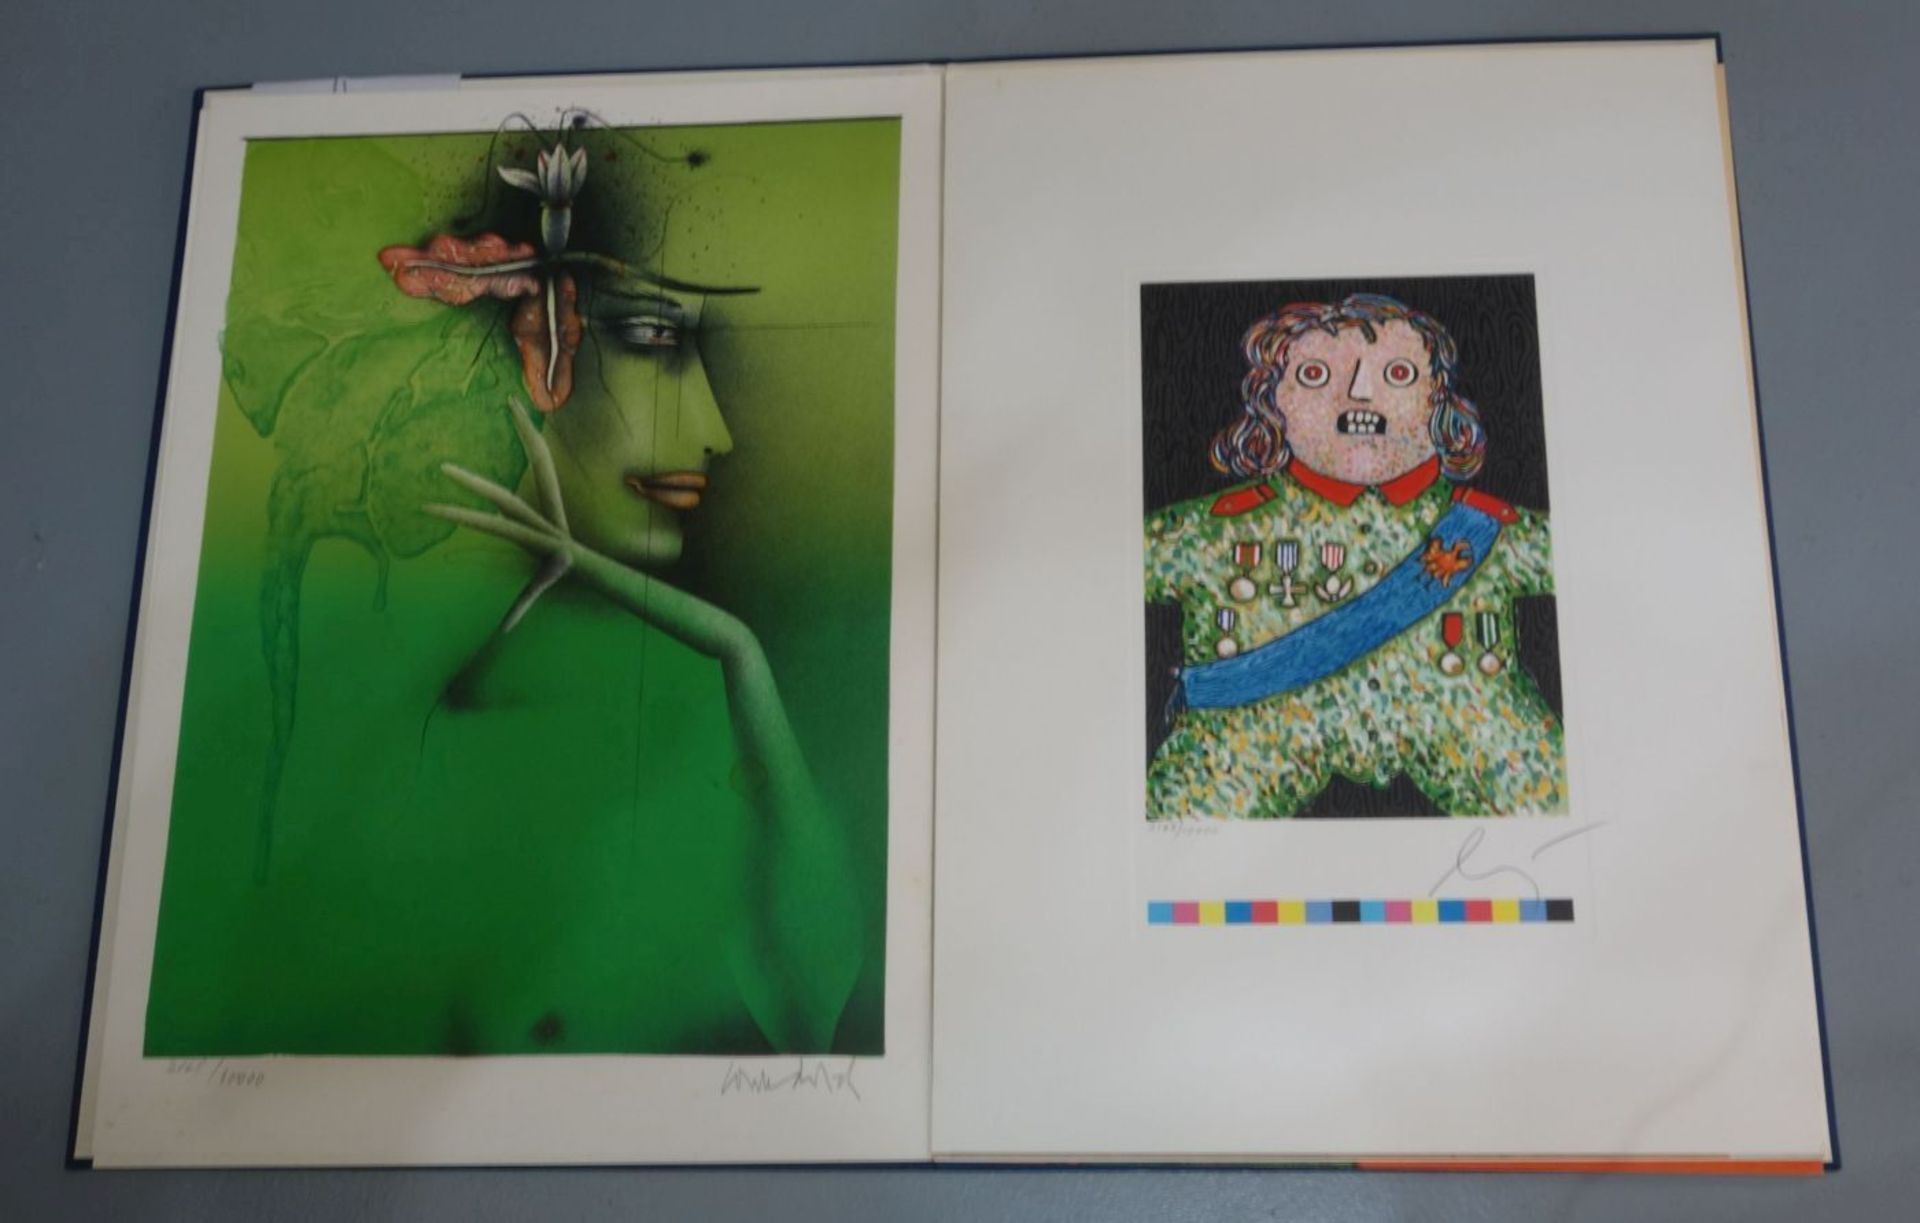 MAPPE: "DIE KUNST DER GRAFIK", 1982, mit 6 FARBLITHOGRAFIEN: ANTES, ADAMI, BRUNI, WUNDERLICH, BAJ UN - Bild 2 aus 3